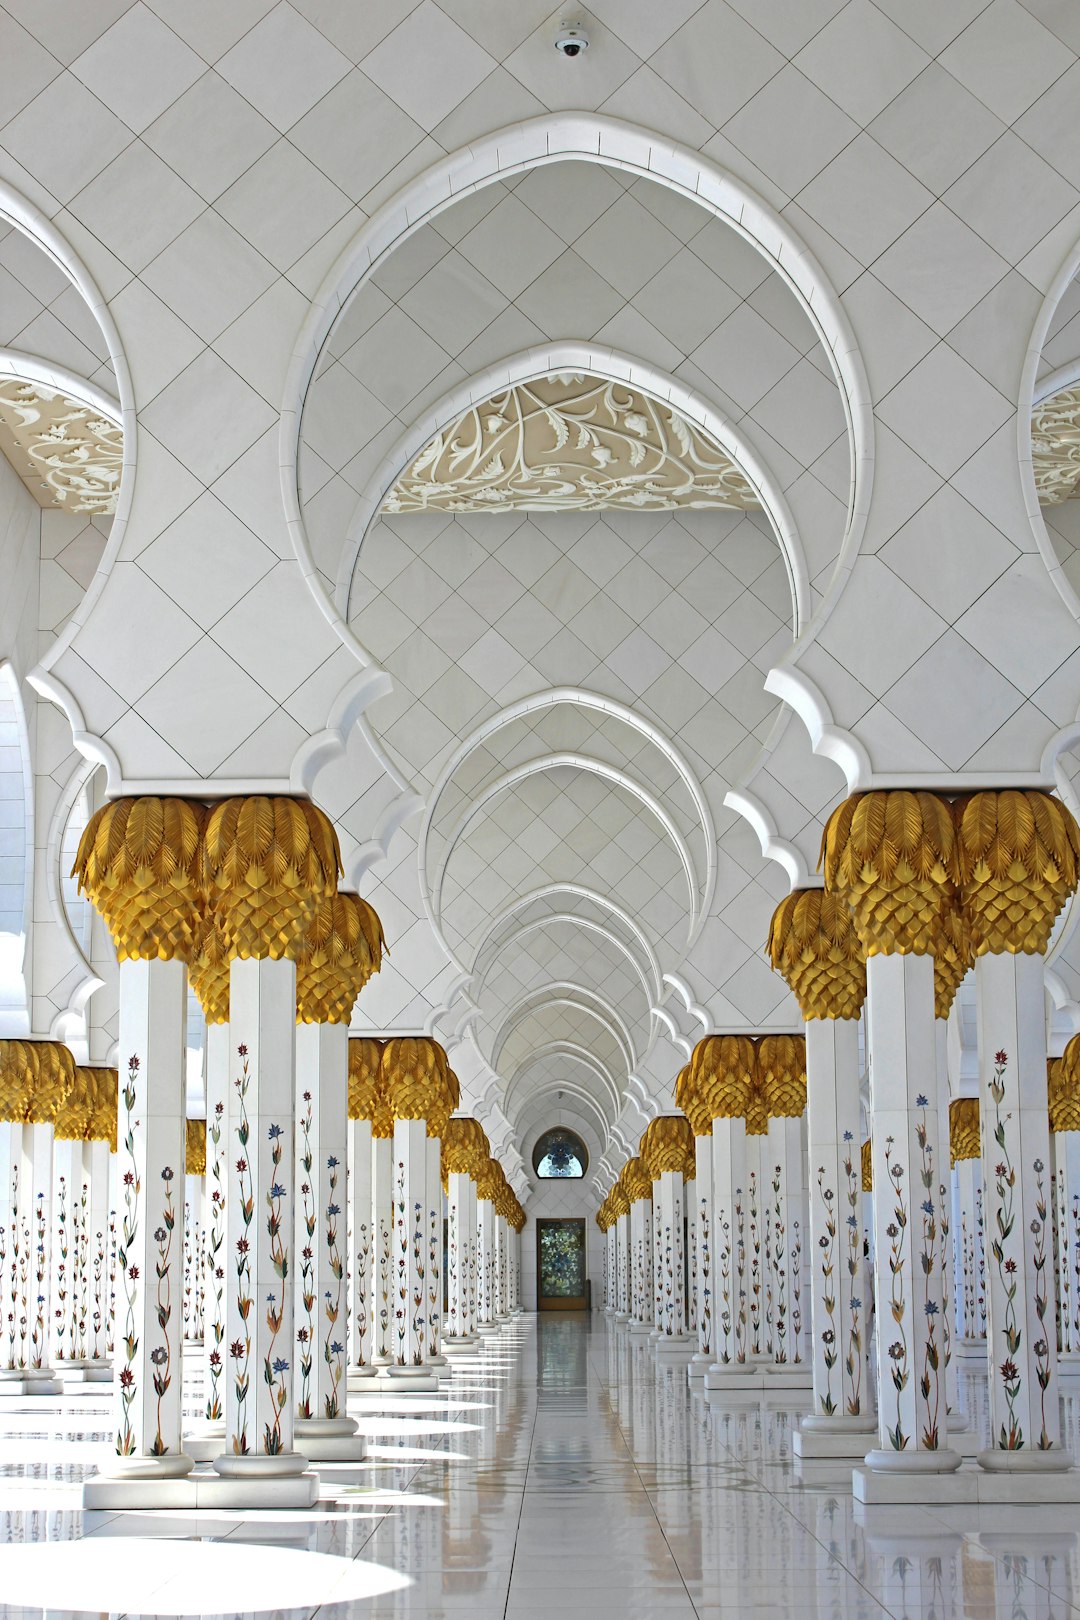 Place of worship photo spot Abu Dhabi Abu Dhabi - United Arab Emirates